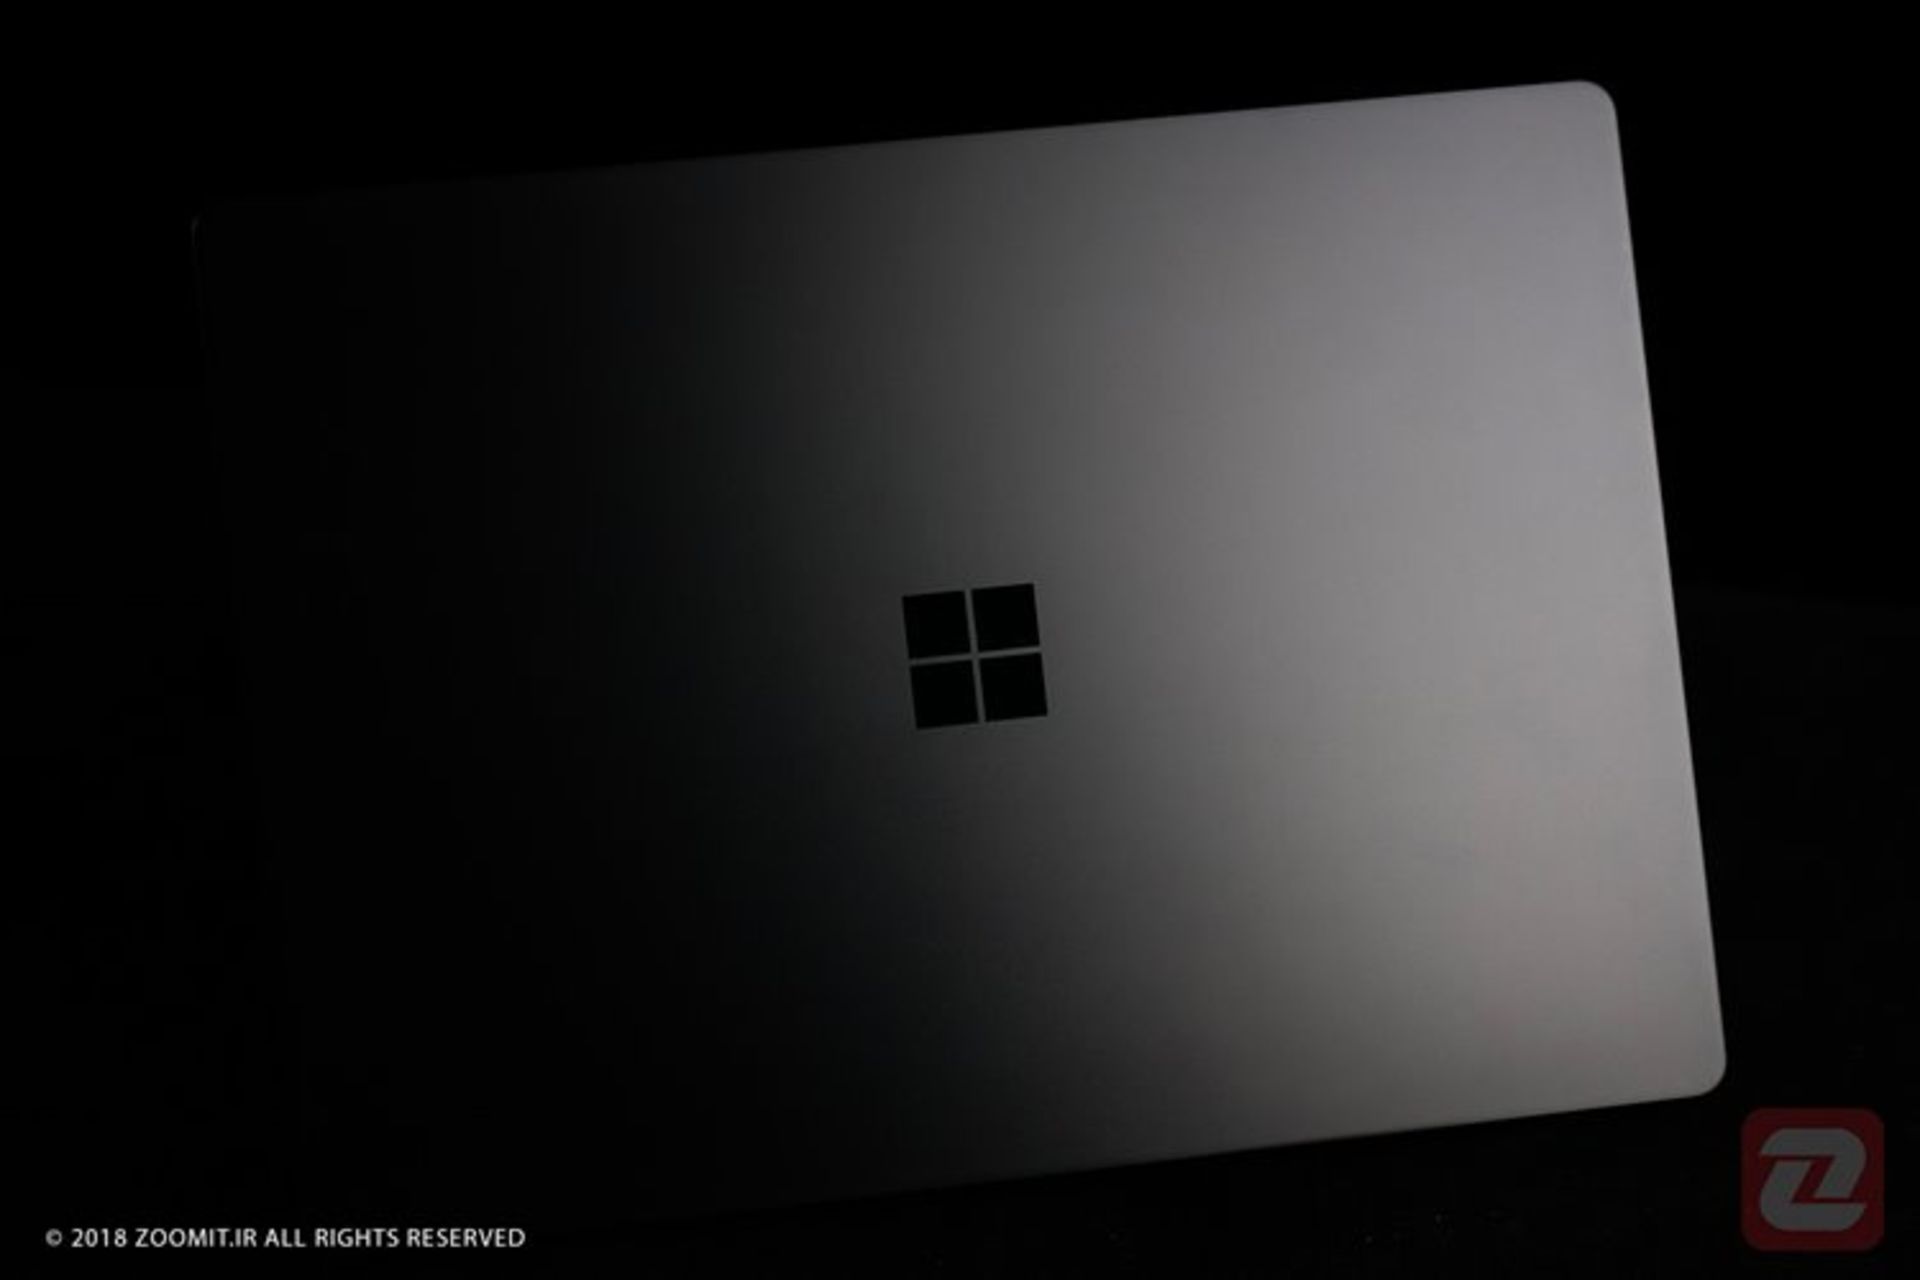 سرفیس لپ تاپ 2 مایکروسافت / Microsoft Surface Laptop 2